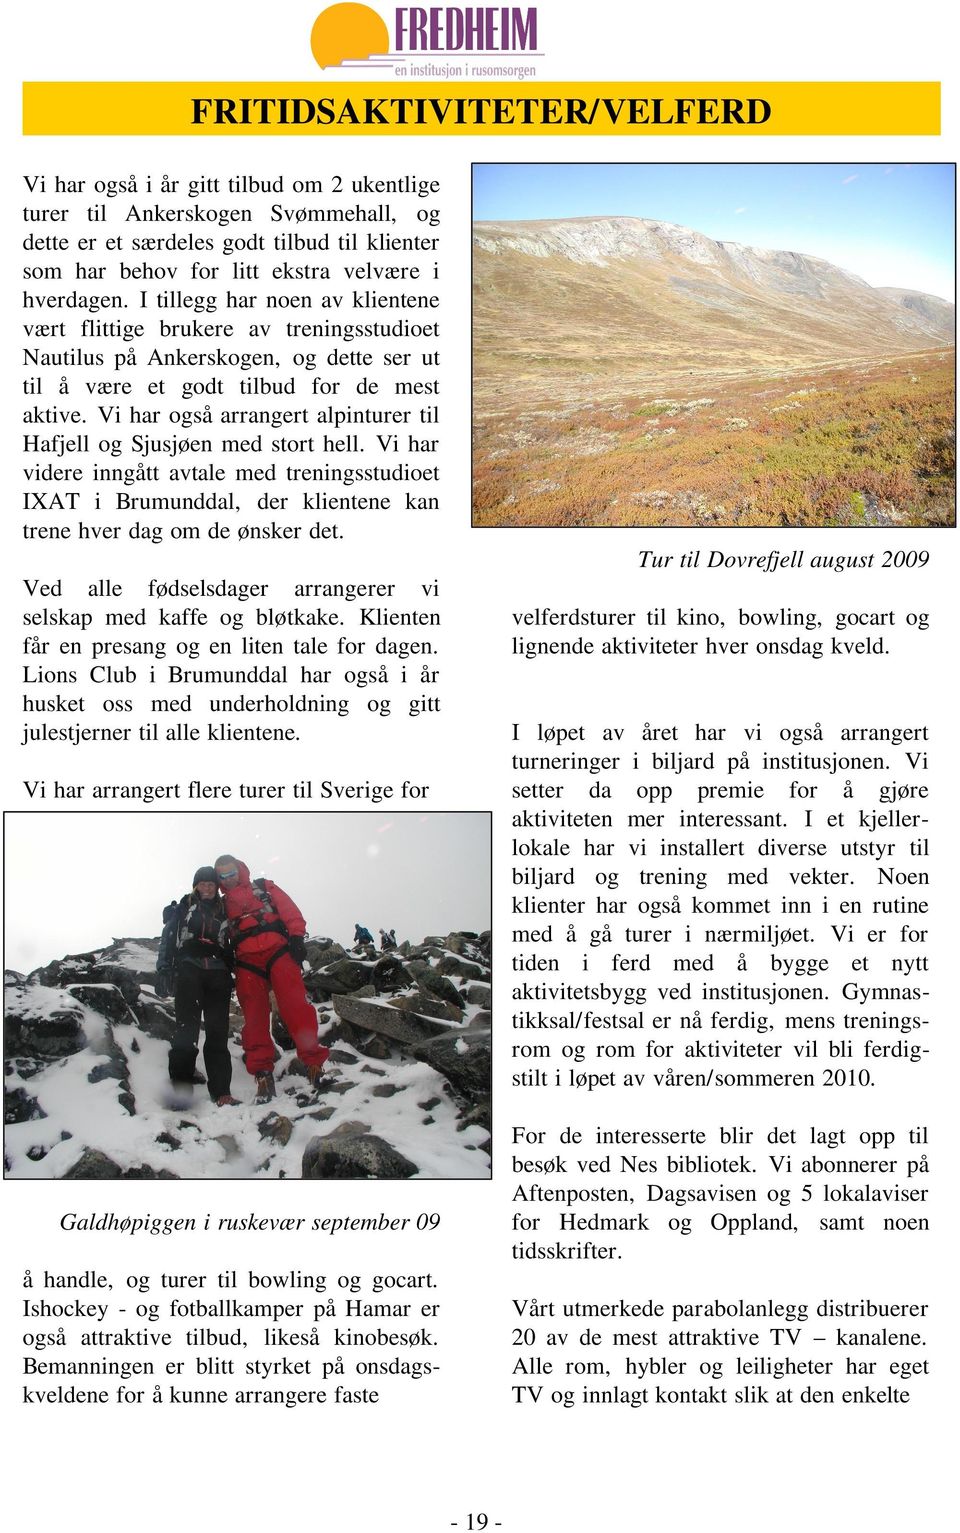 Vi har også arrangert alpinturer til Hafjell og Sjusjøen med stort hell. Vi har videre inngått avtale med treningsstudioet IXAT i Brumunddal, der klientene kan trene hver dag om de ønsker det.